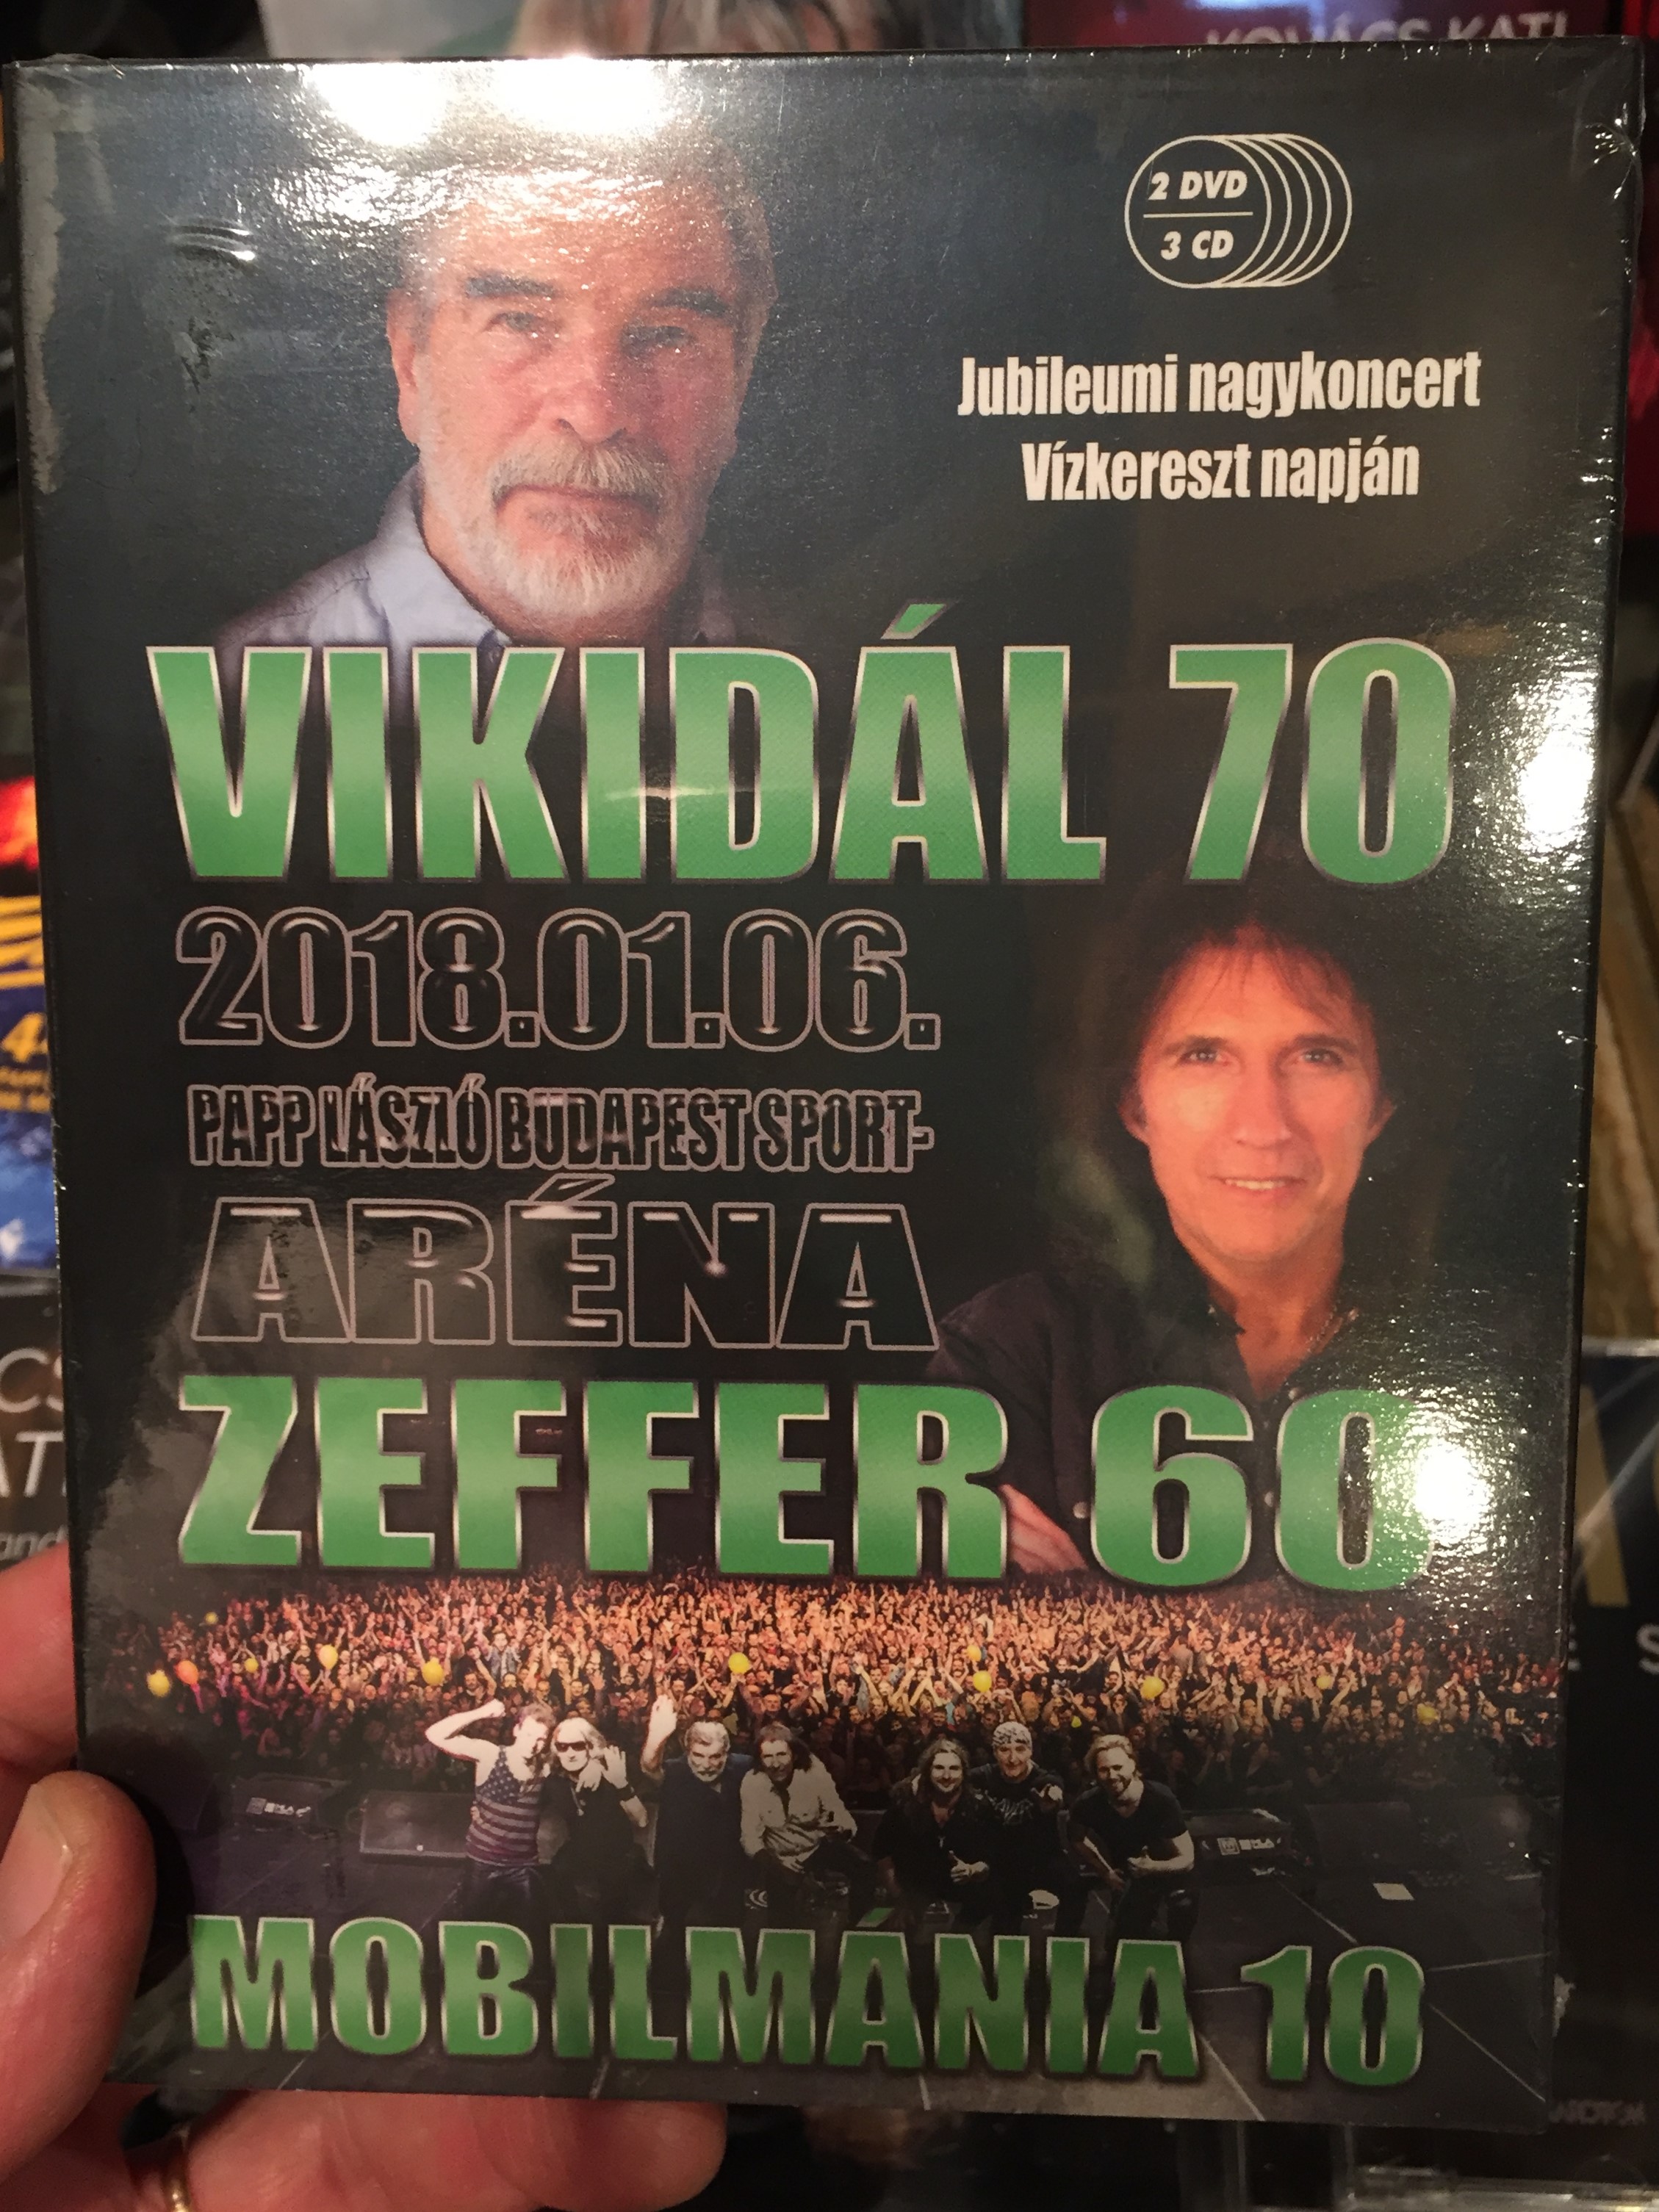 vikid-l-70-zeffer-60-mobilm-nia-10-dvd-2018-anniversary-concert-papp-l-szl-budapest-sportar-na-3x-audio-cd-3-dvd-1-.jpg